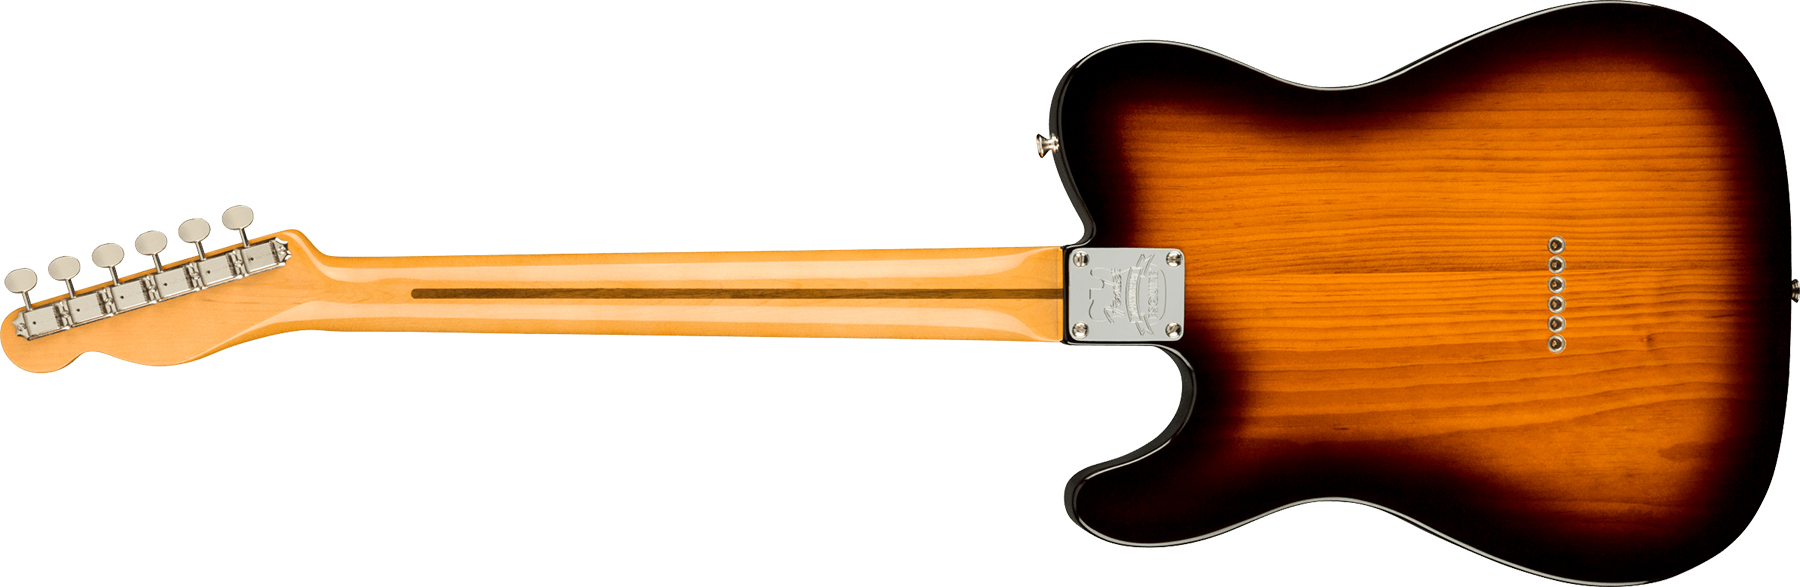 Fender Esquire/tele 70th Anniversary Usa Mn - 2-color Sunburst - E-Gitarre in Teleform - Variation 1